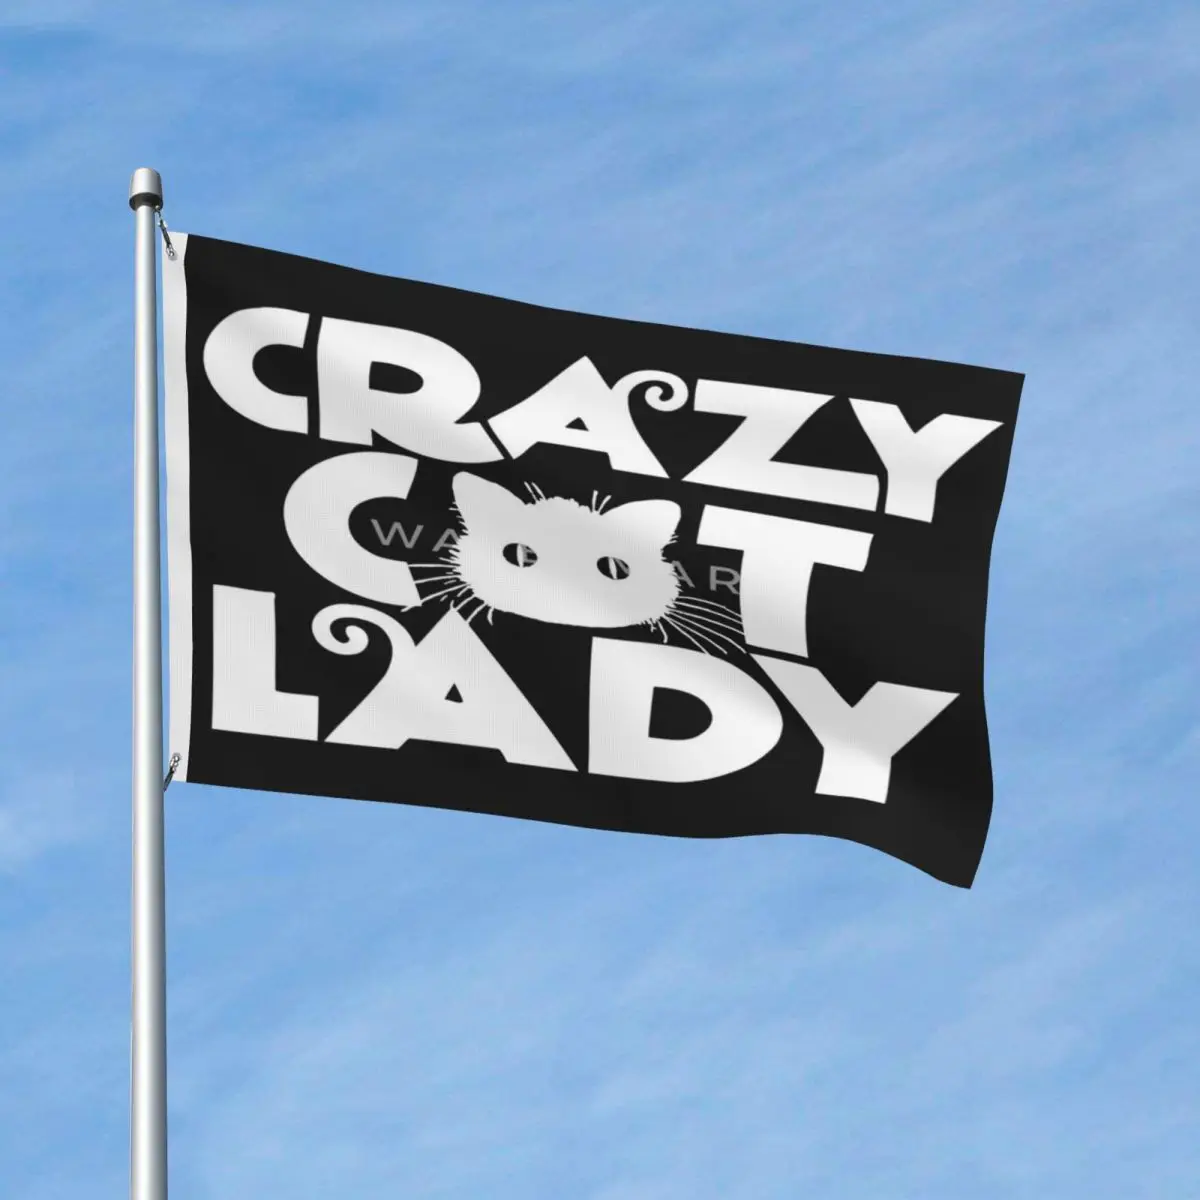 

Crazy Cat Lady декор с флагами современный легко повесить выцветающий нежный драпировочный